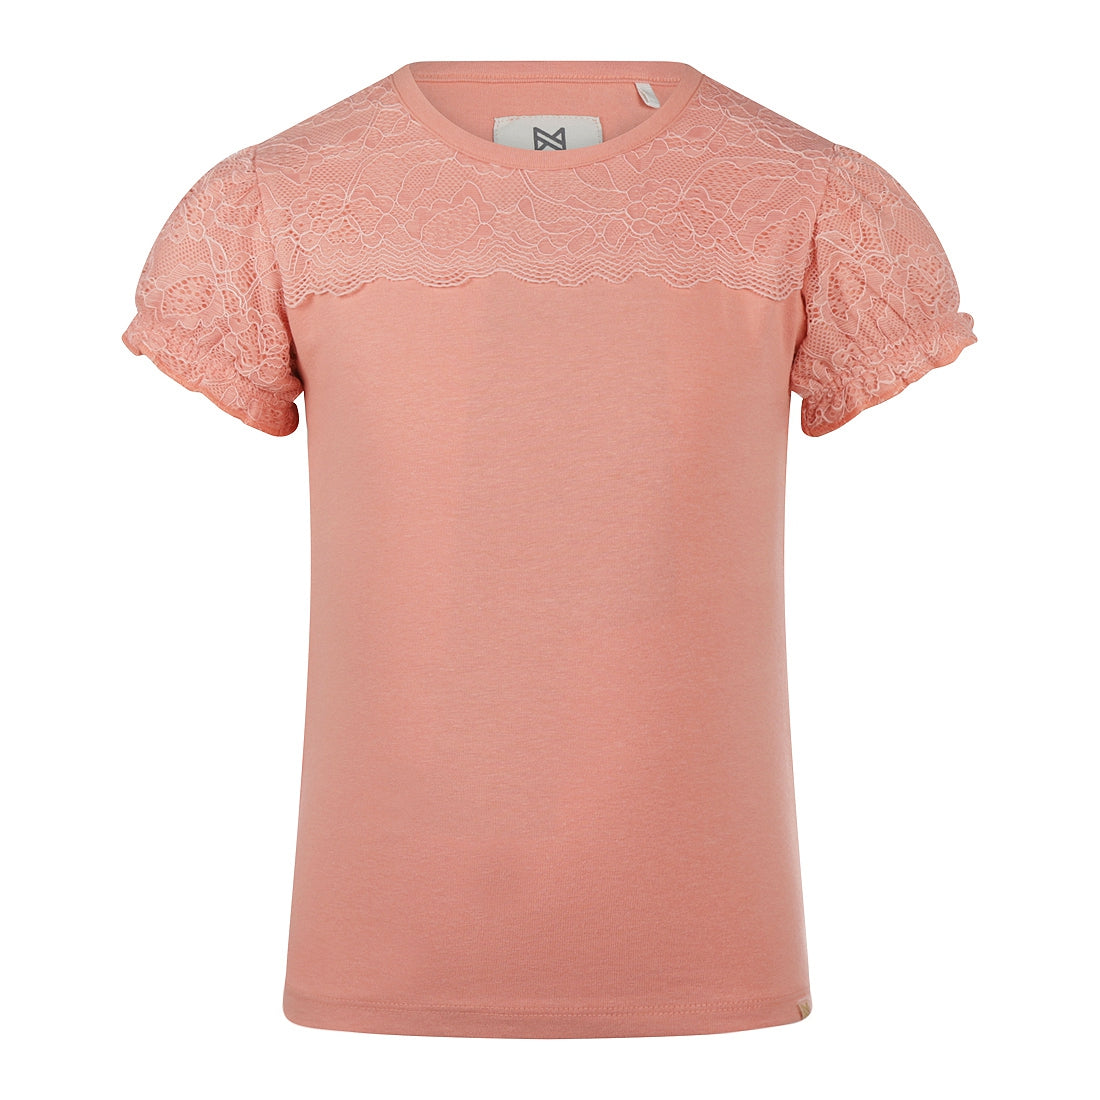 Meisjes T-shirt ss van Koko Noko in de kleur Coral pink in maat 128.